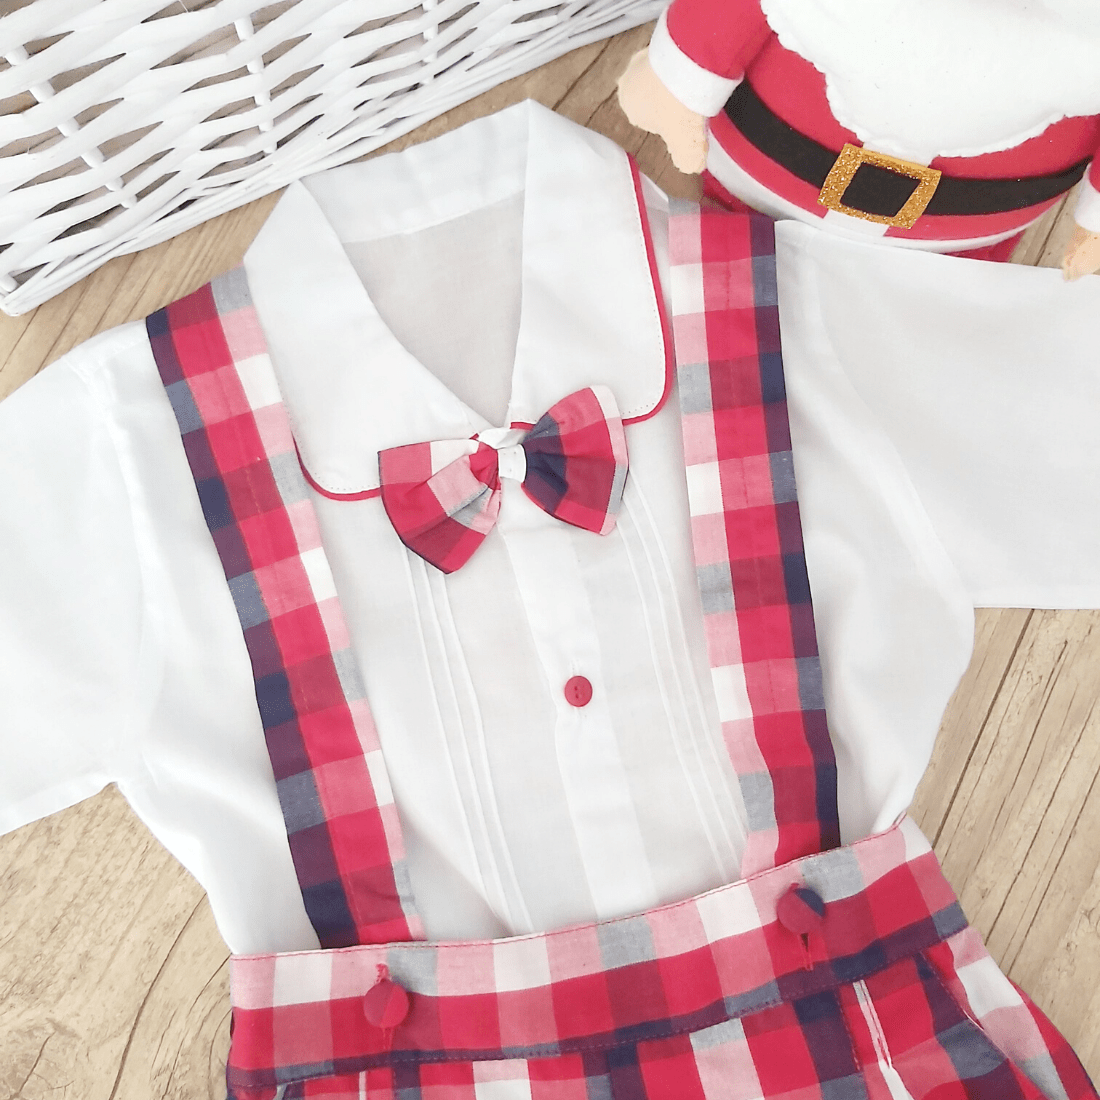 Conjunto camisa e calção xadrez vermelho - IndyKids - Bens para Bebés &  Crianças